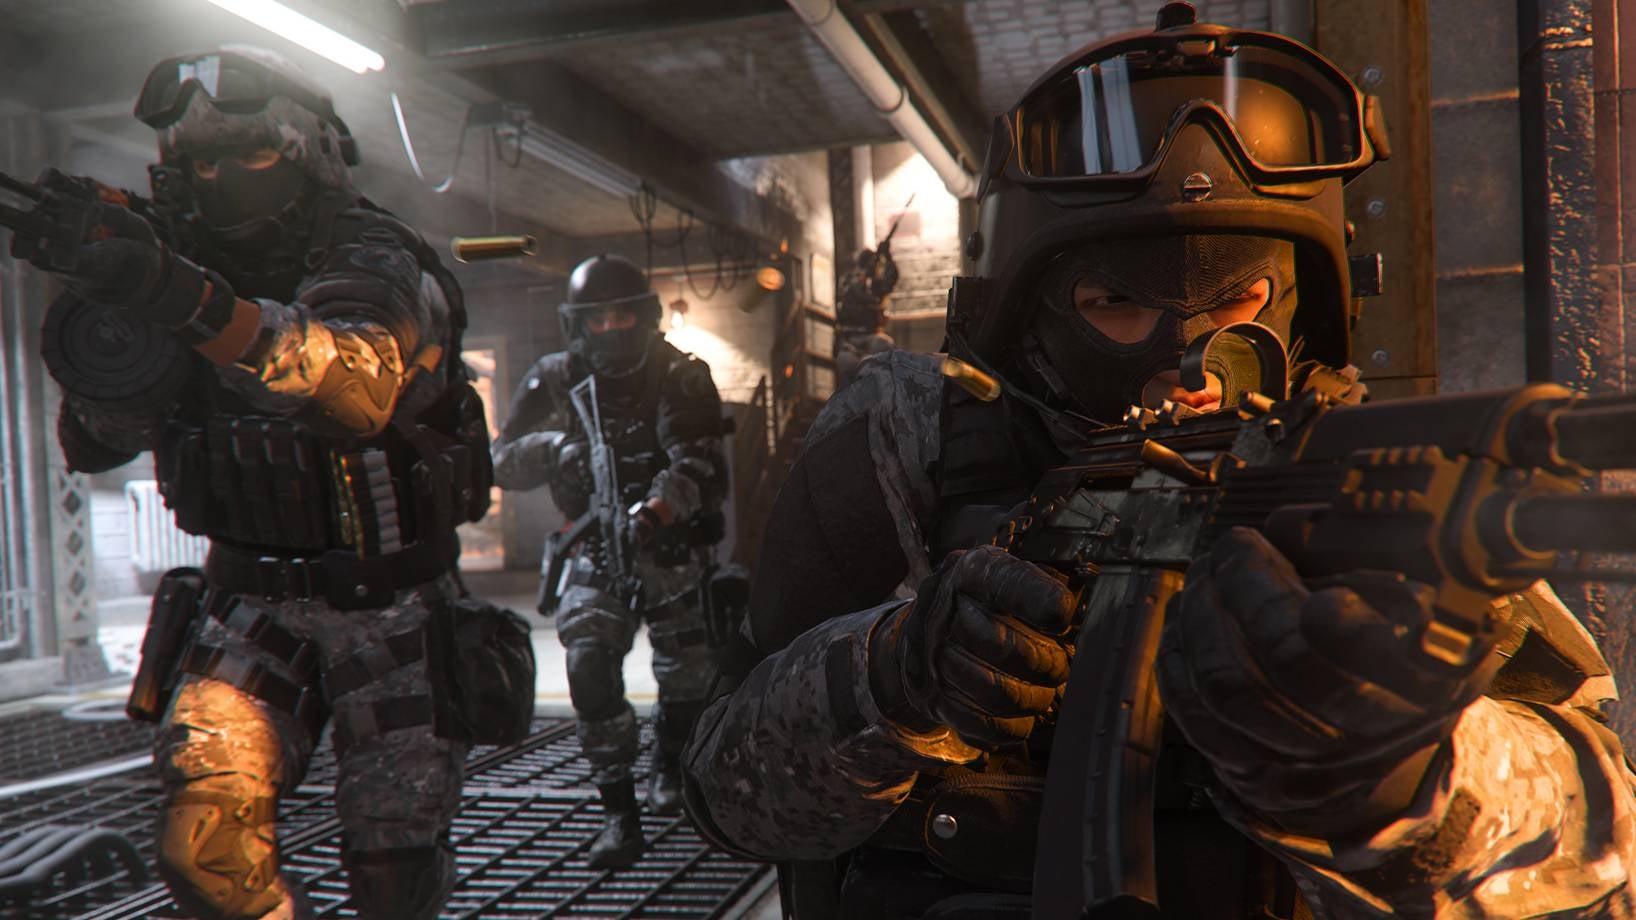 Volume langkah kaki Call of Duty Modern Warfare 2 diam-diam meningkat hingga 75%